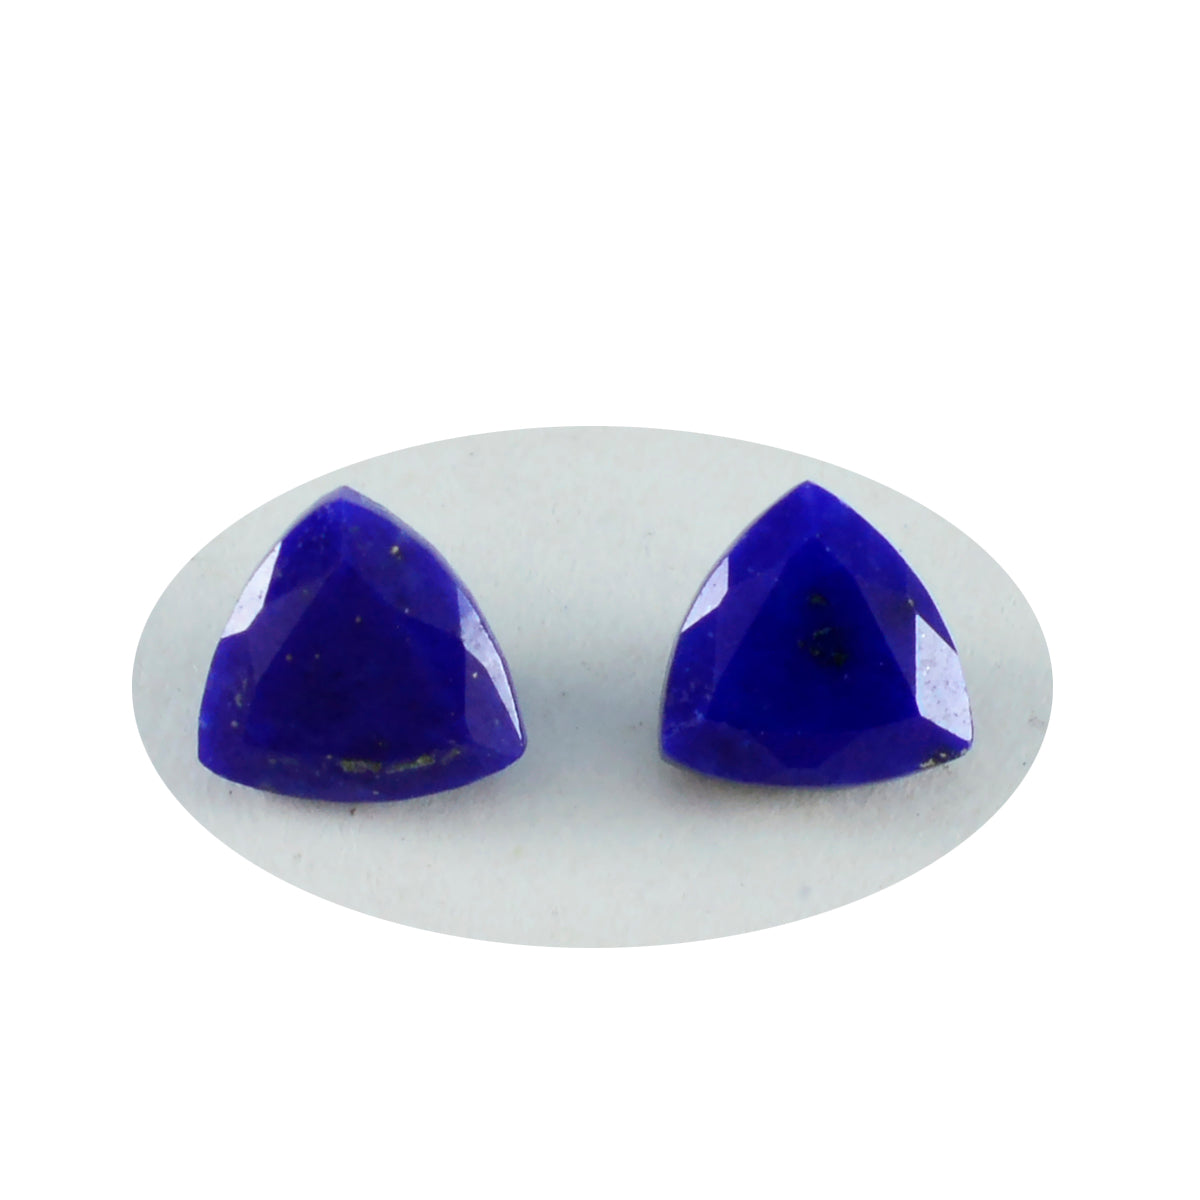 riyogems 1шт натуральный синий лазурит ограненный 10x10 мм форма триллиона качественный драгоценный камень